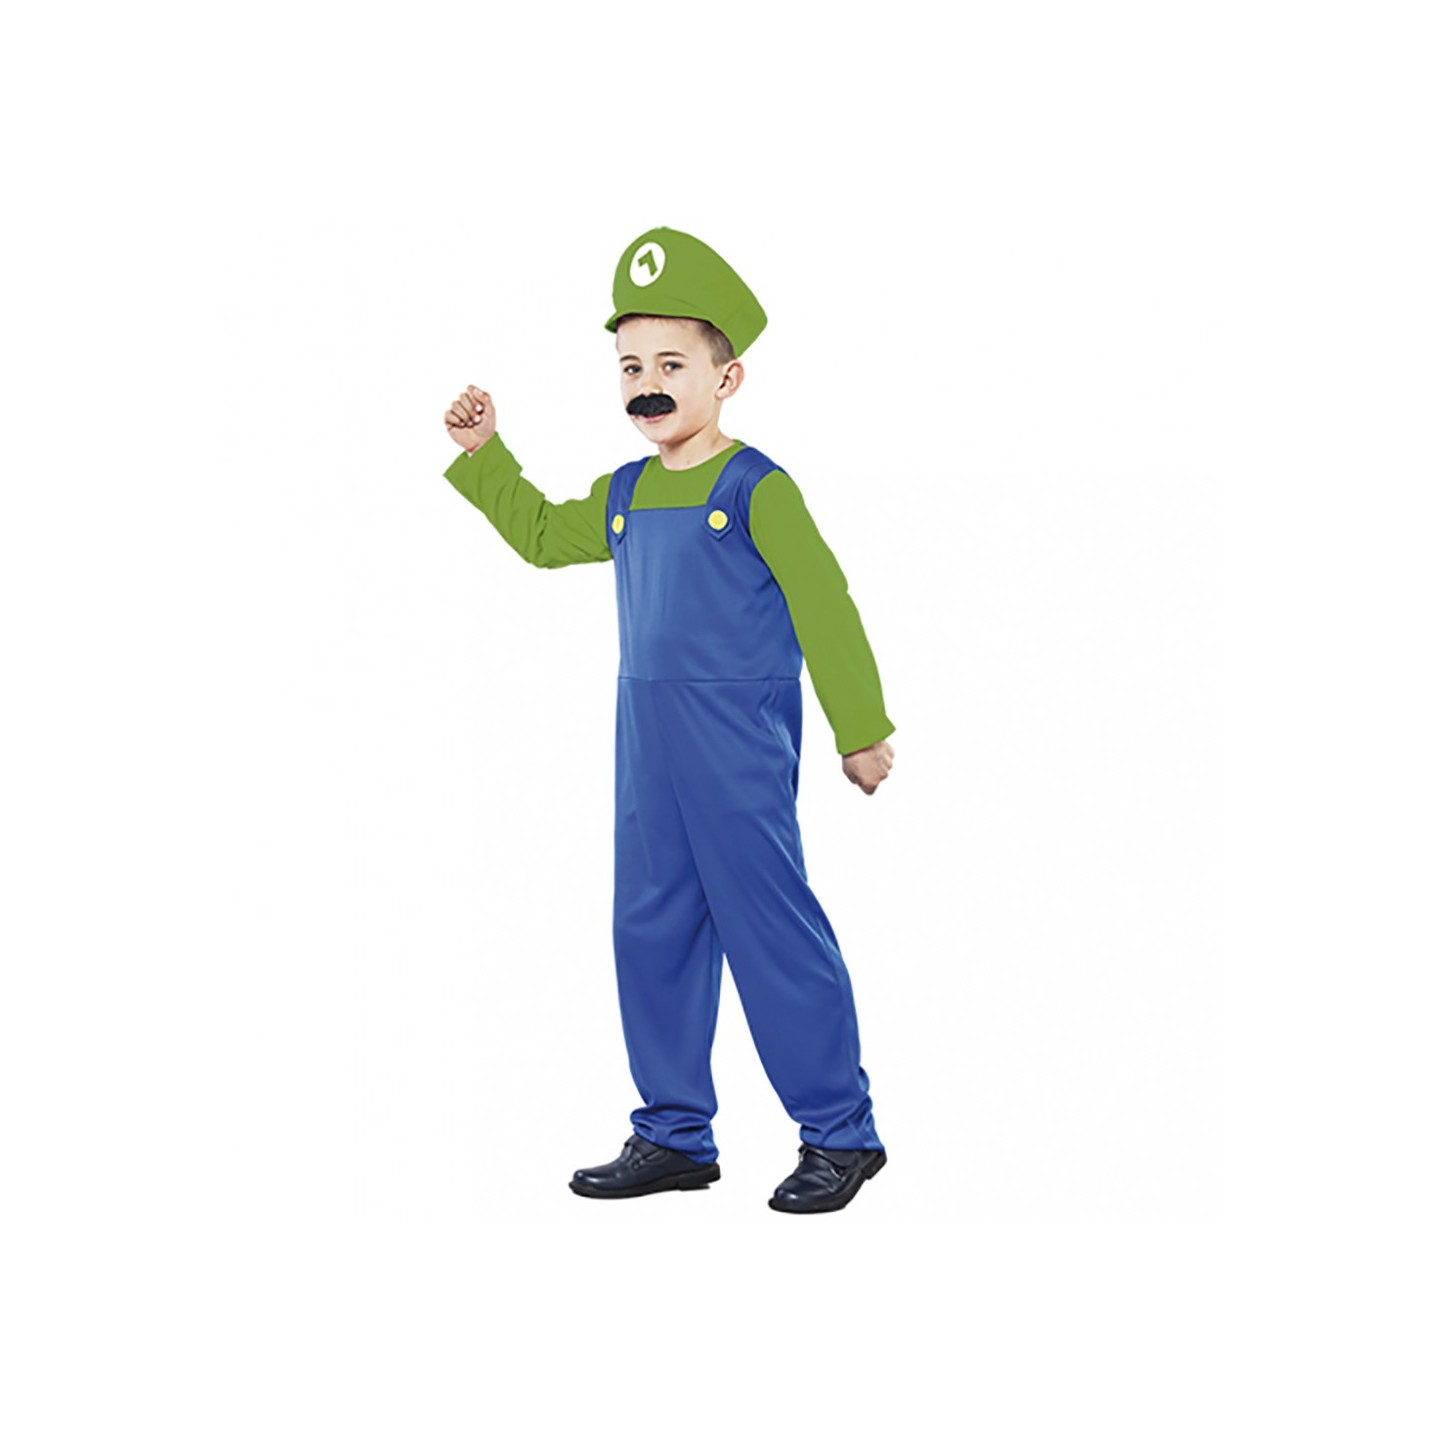 Motivatie Doornen Onleesbaar Super Luigi kostuum kind| Jokershop.be - Verkleedwinlkel